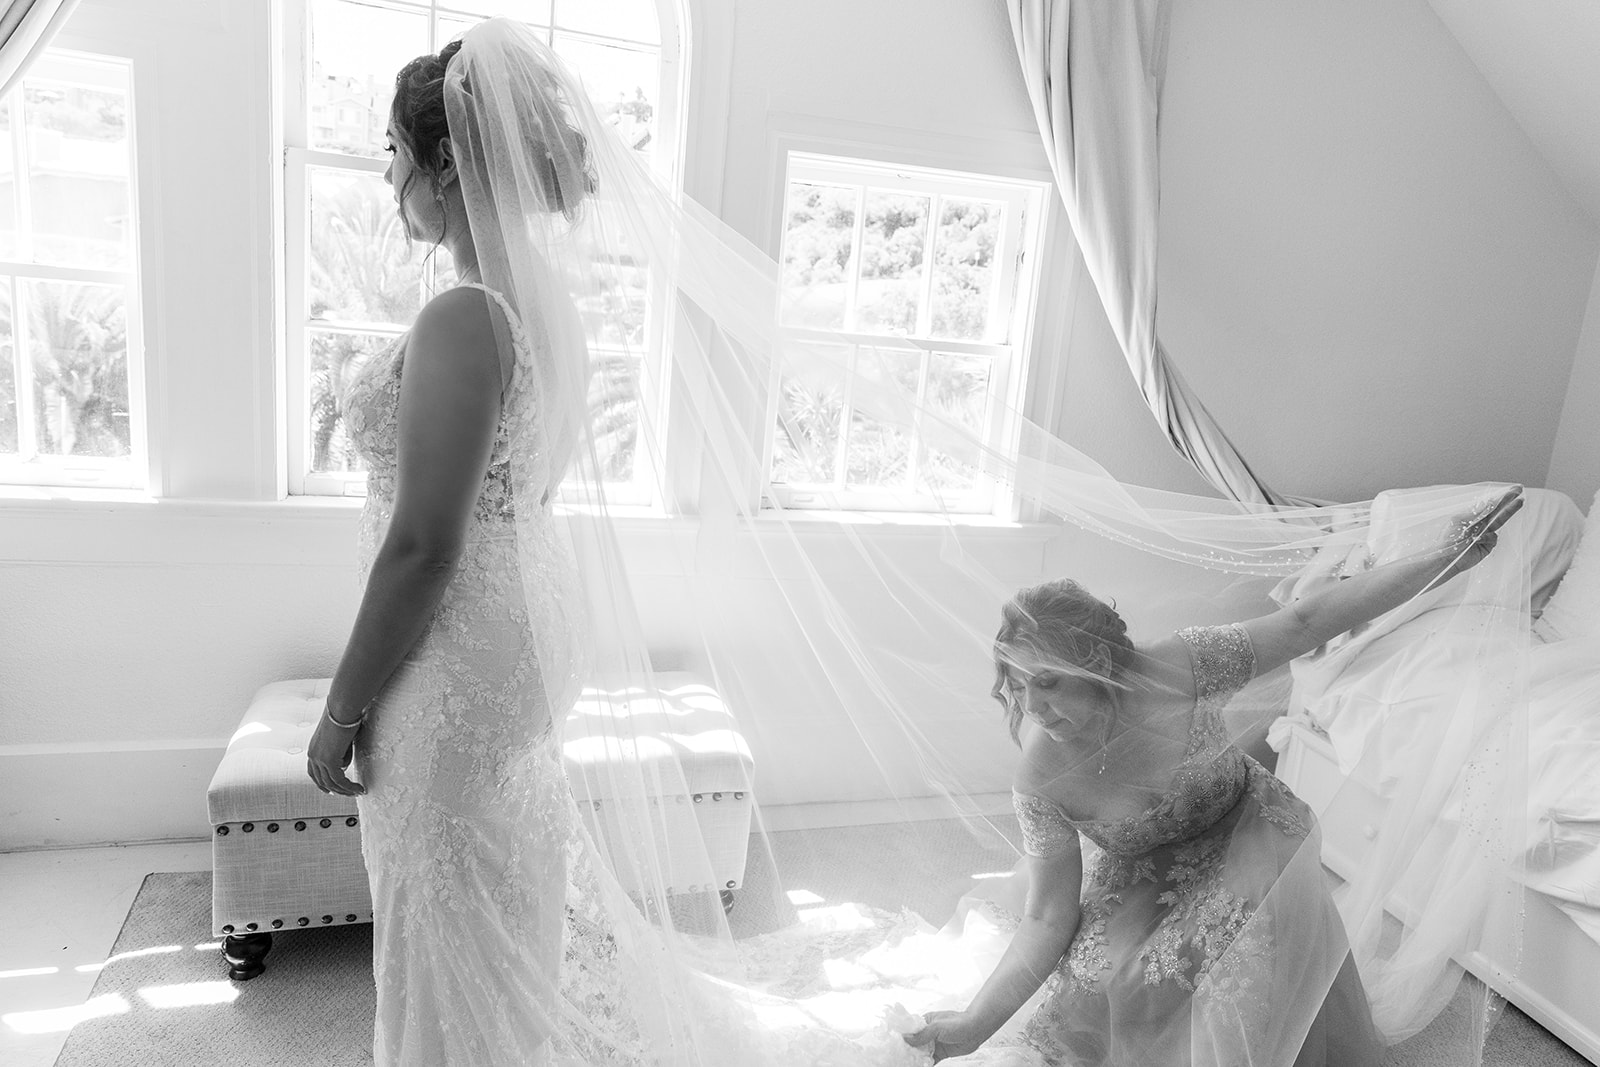 Mom fixes bride's veil